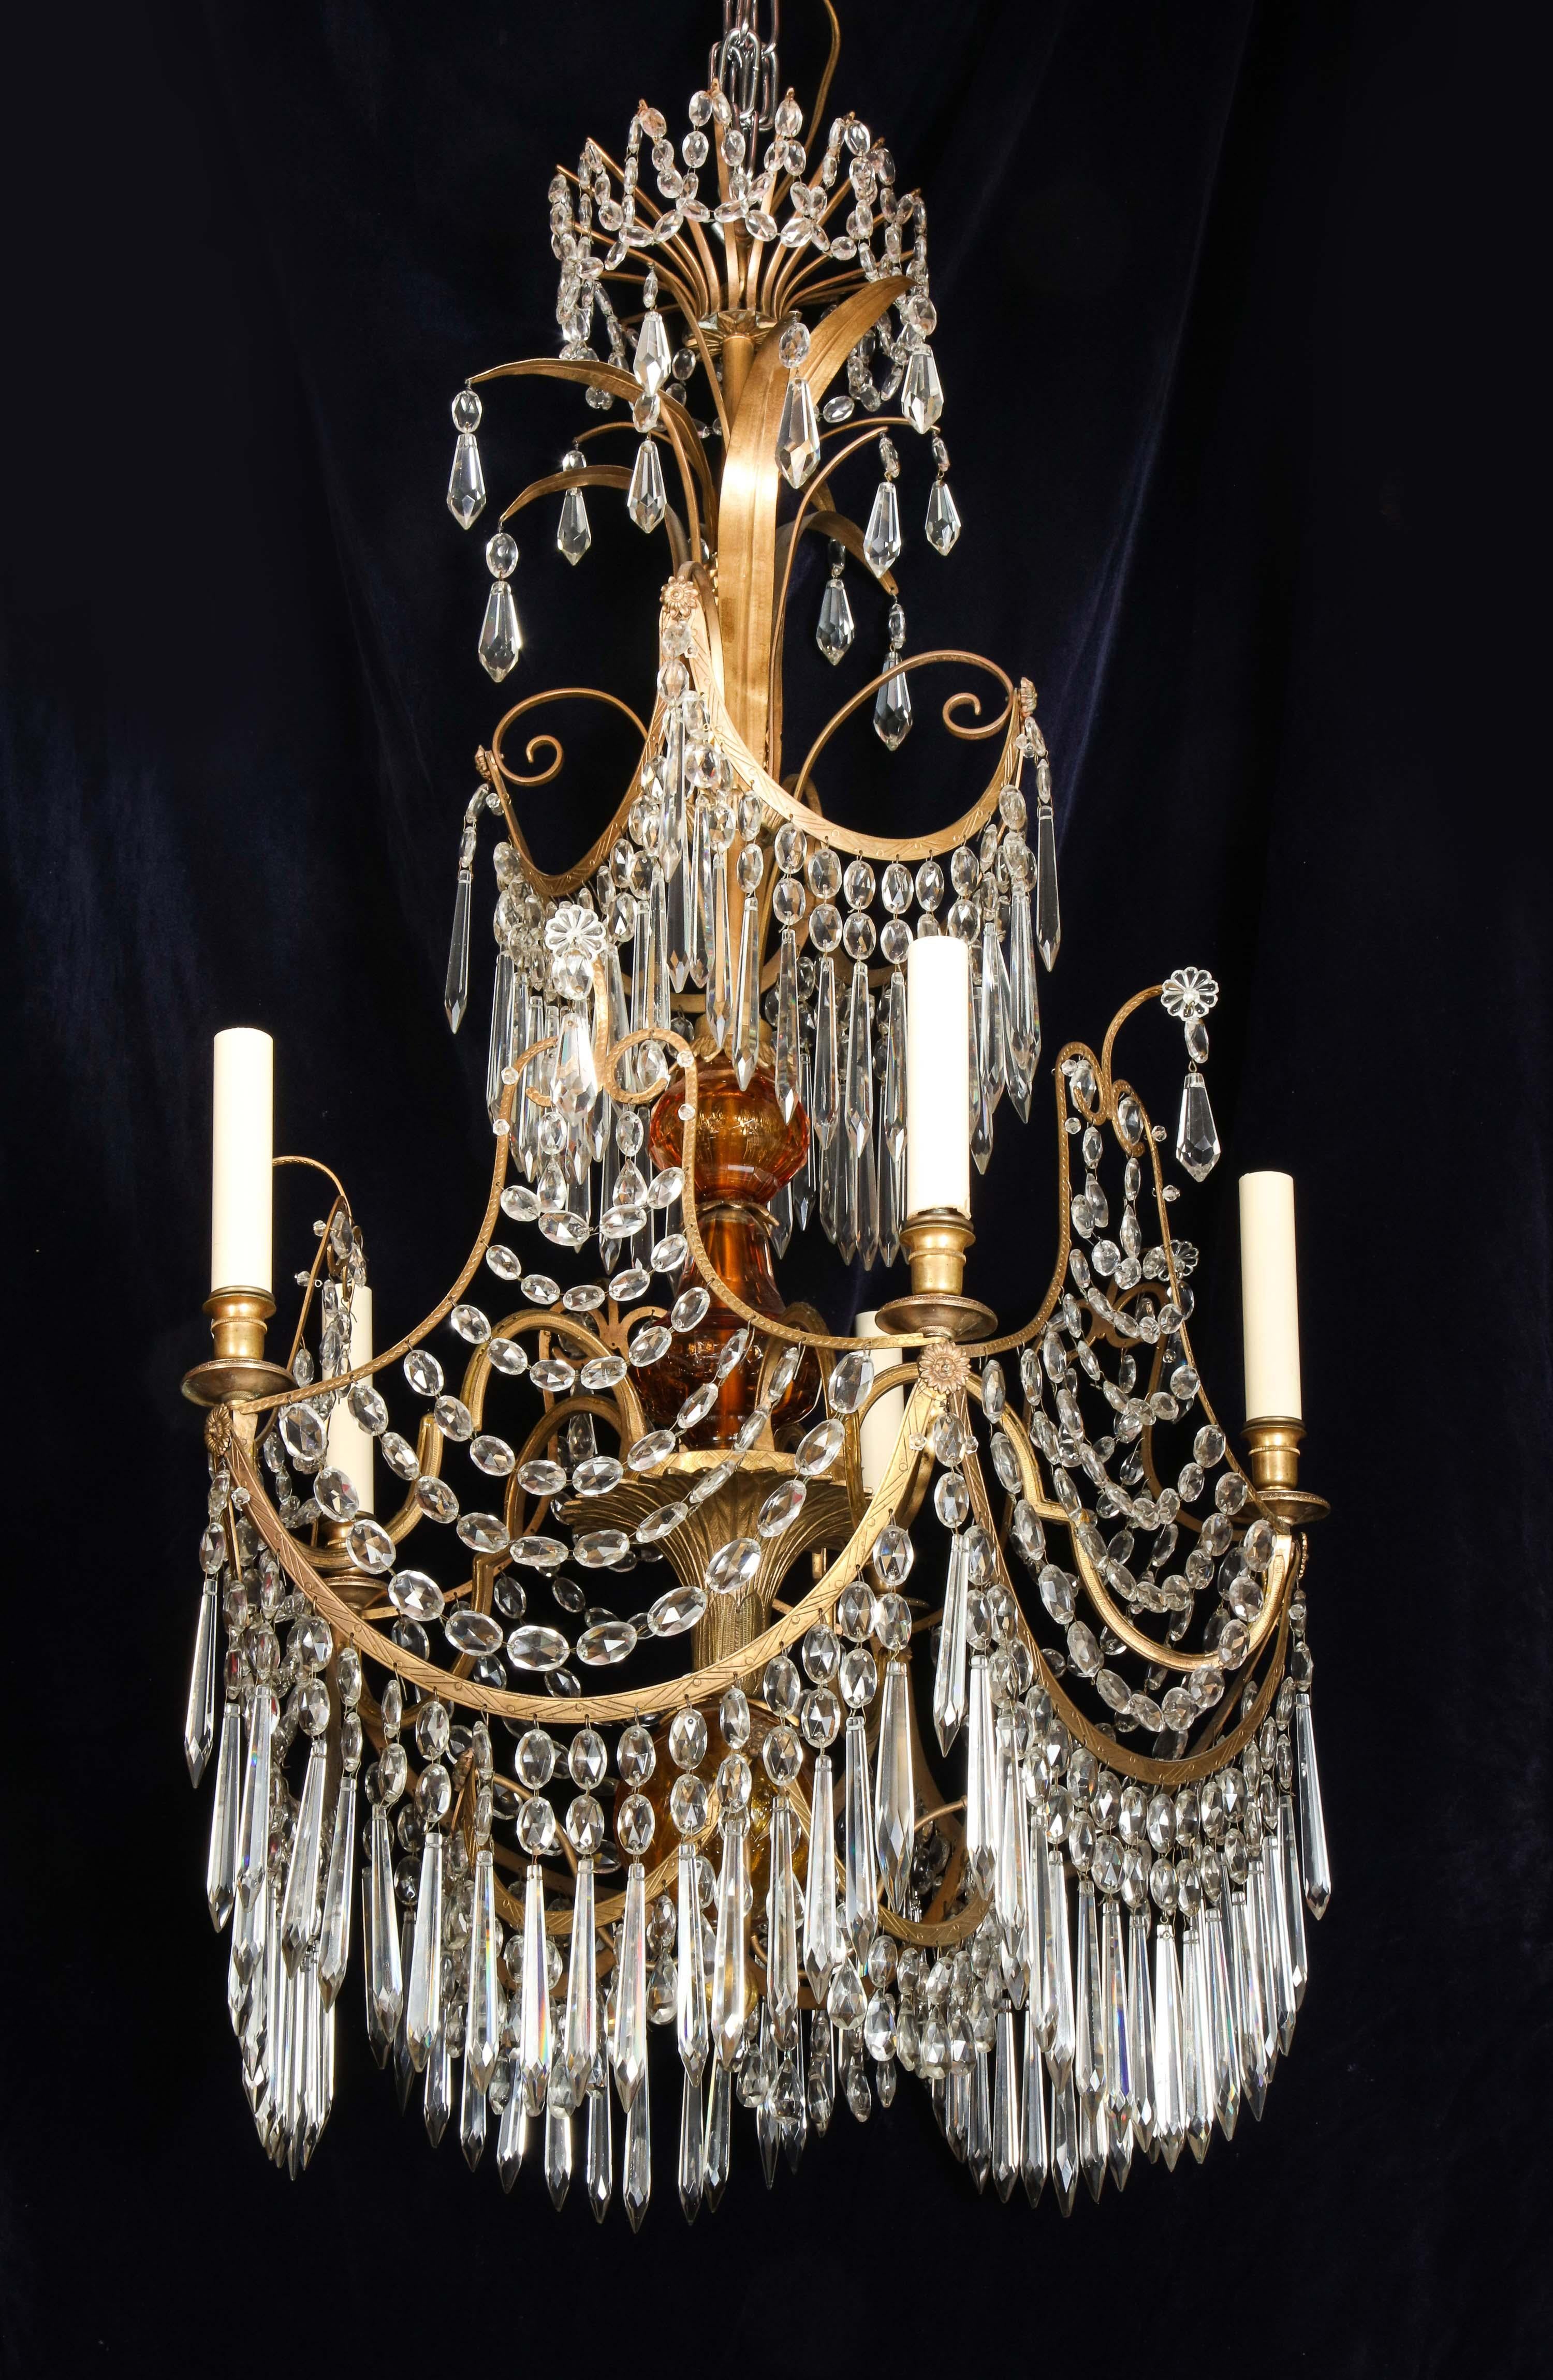 Un rare lustre néoclassique russe ancien à plusieurs lumières en bronze doré, verre ambré et cristal taillé, de forme très unique. Ce lustre est de belle facture, embelli par un verre ambré au centre et orné de prismes en cristal taillé, de chaînes